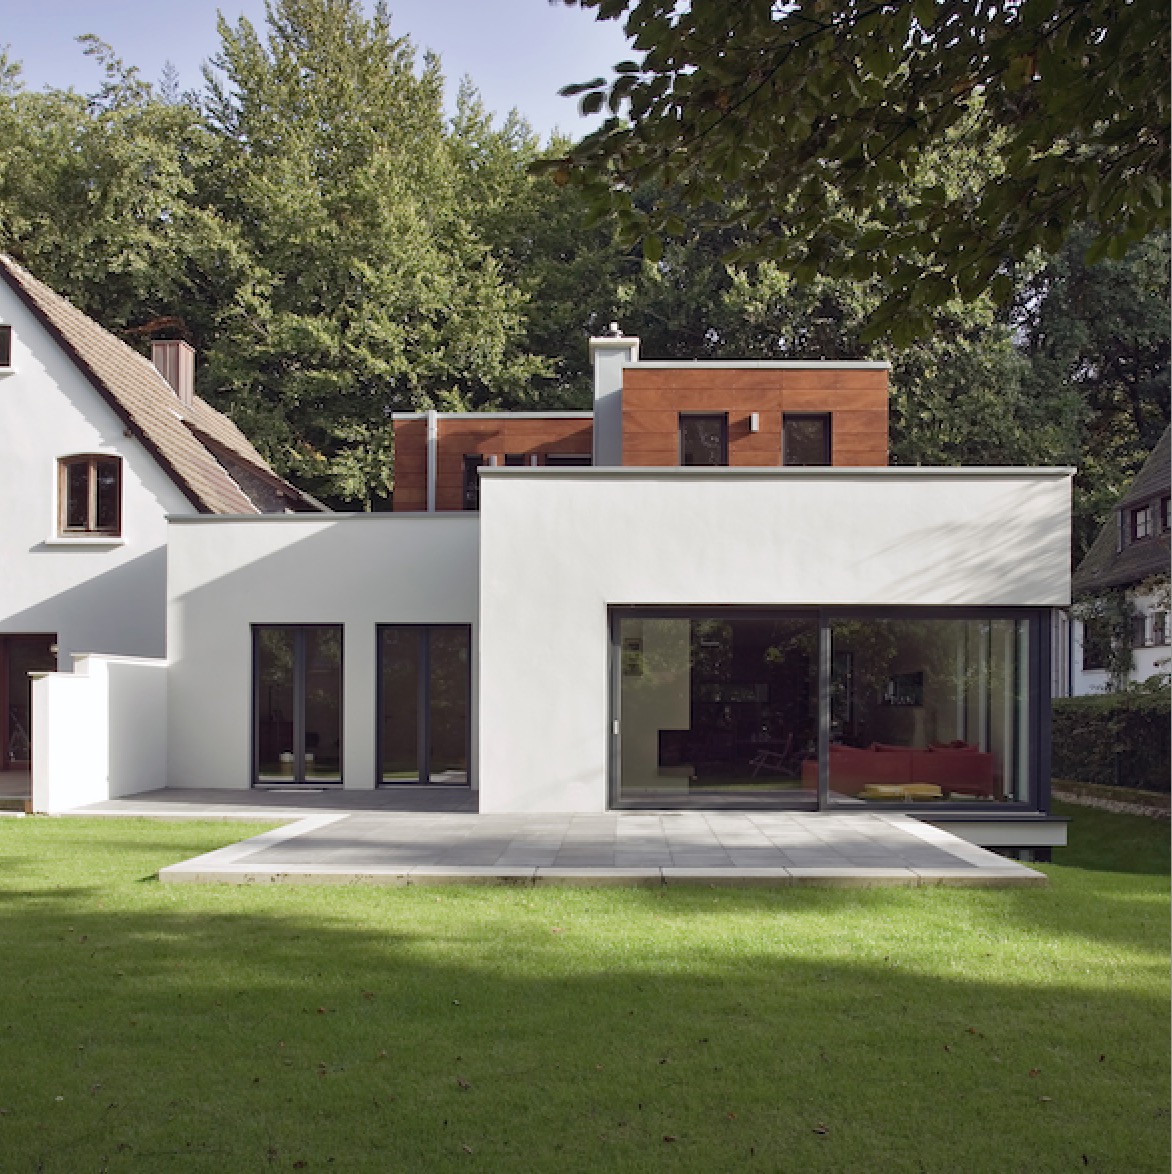 Außenputz von Stukkateur Jungkunst (Bochum) - Fassadenarbeiten an wohnhaus - Glattputz weiß